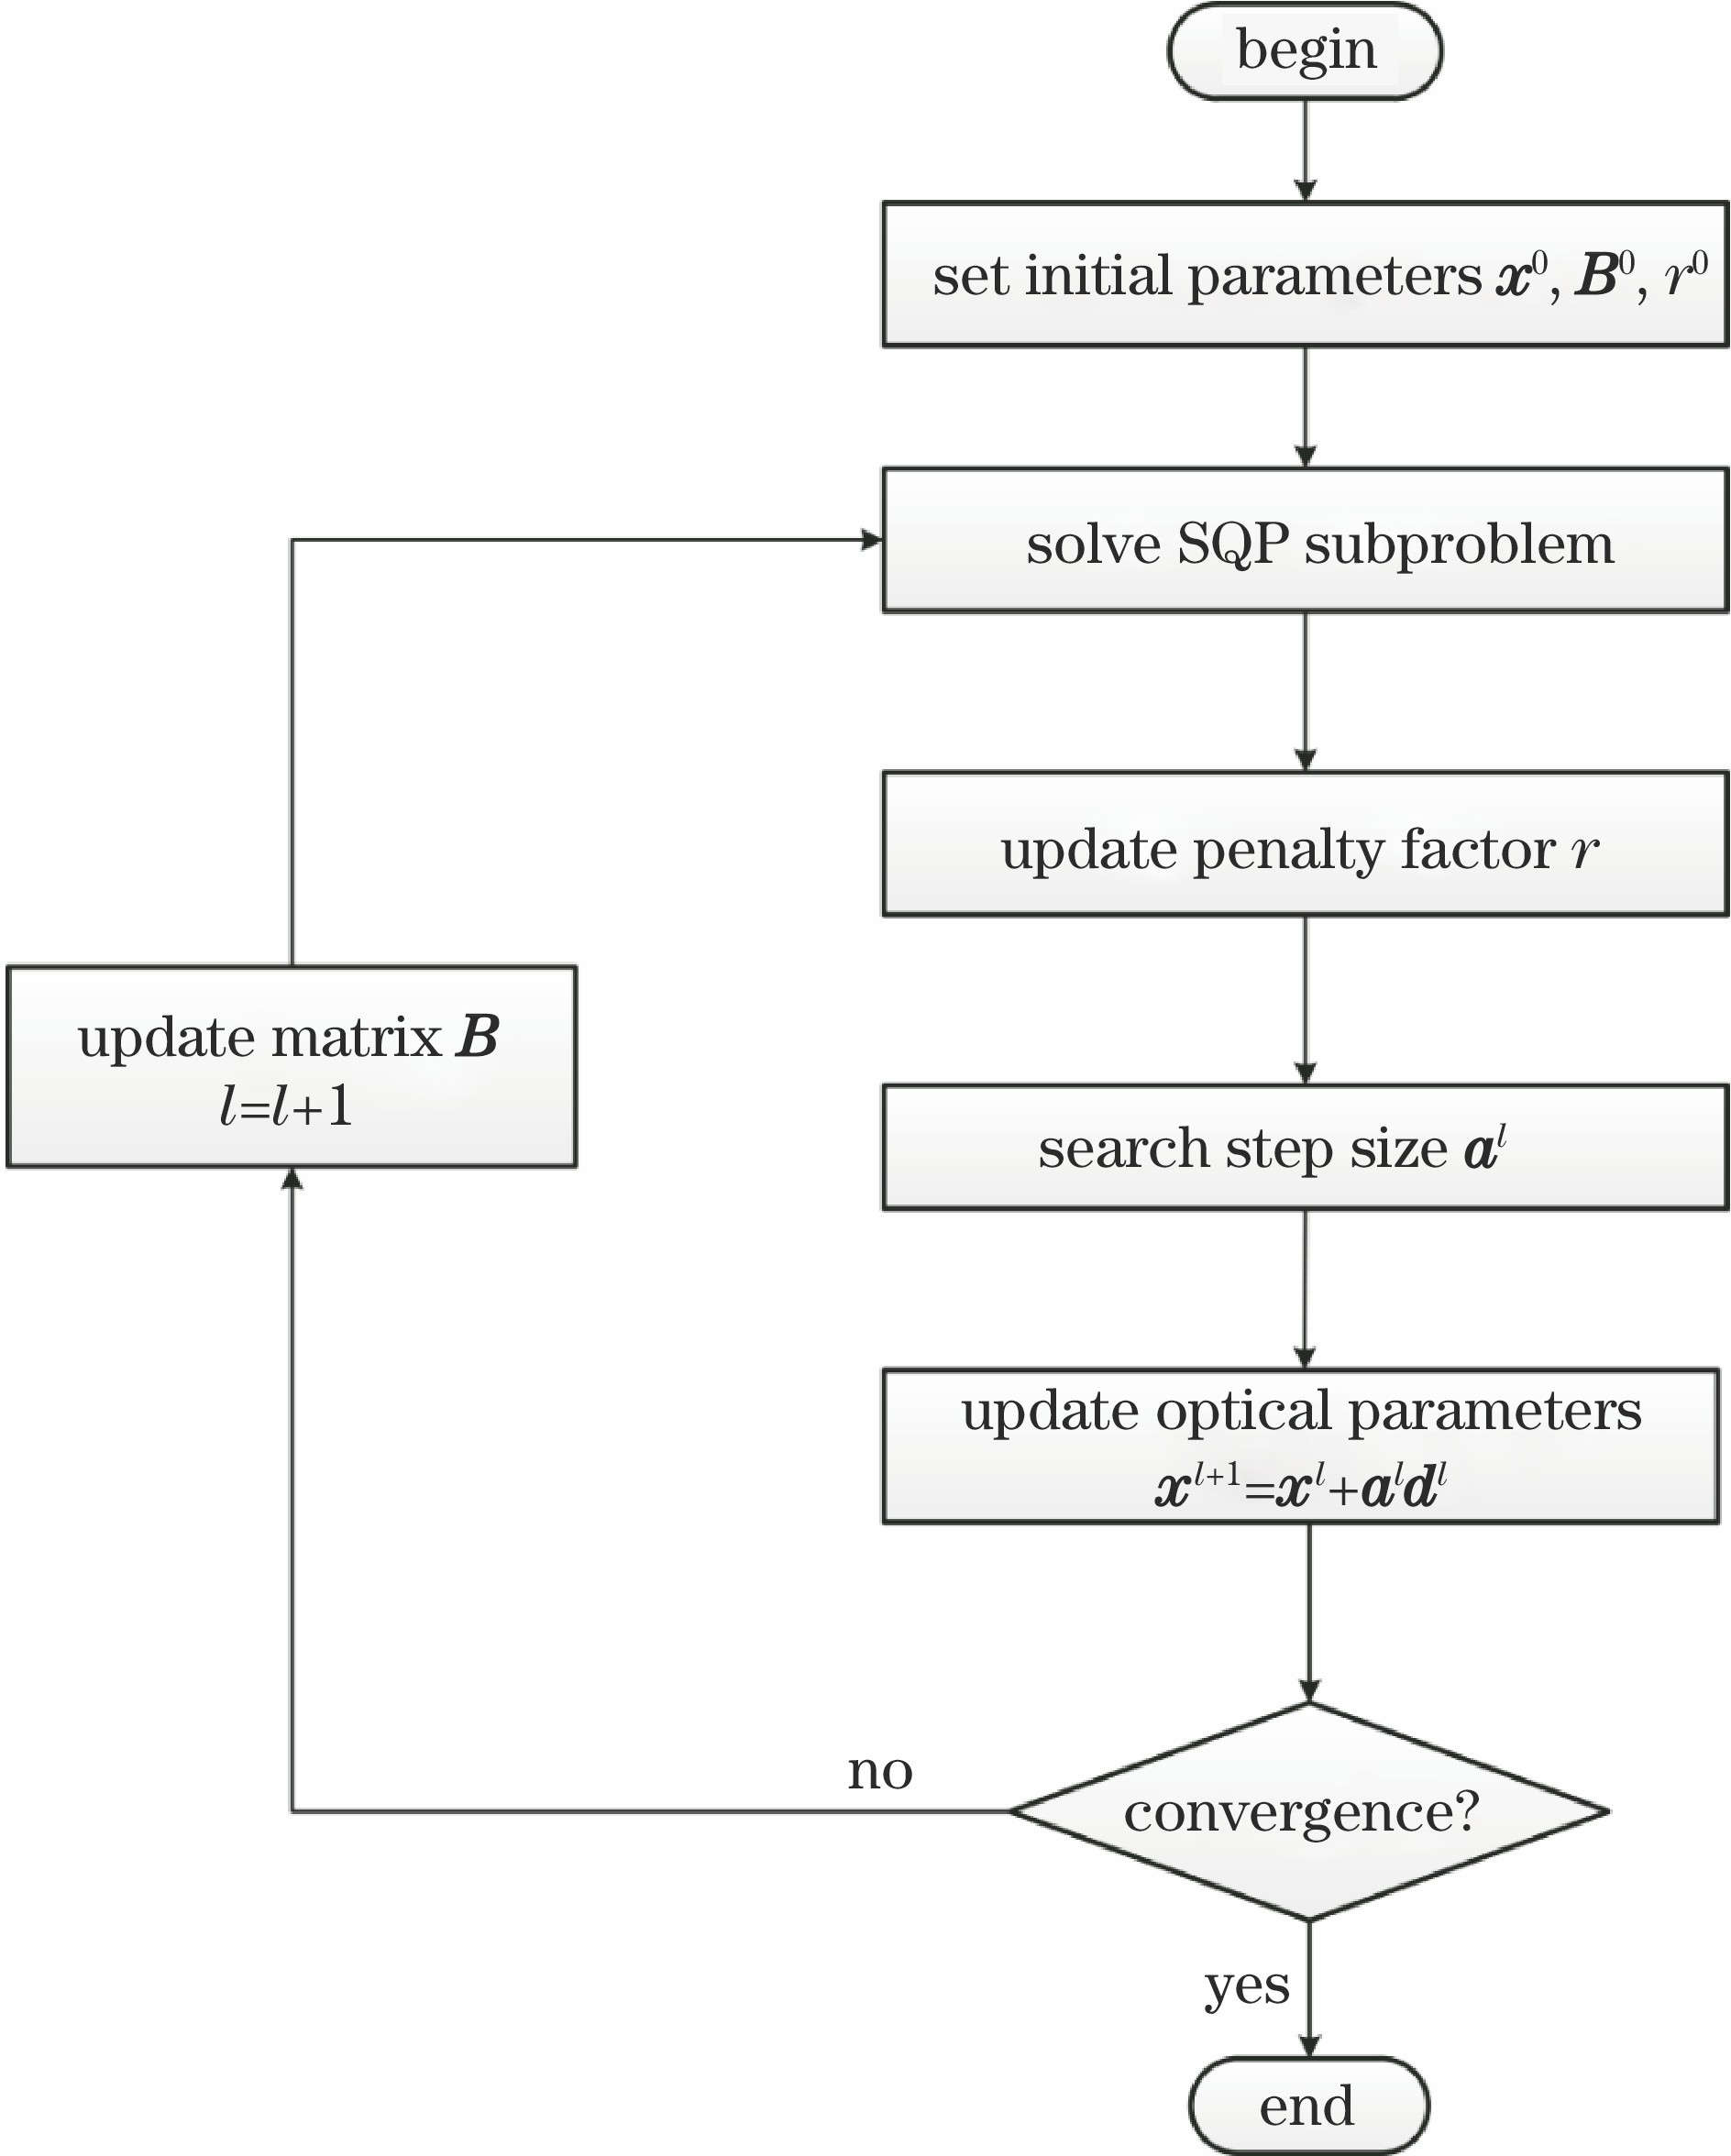 Flow chart of SQP